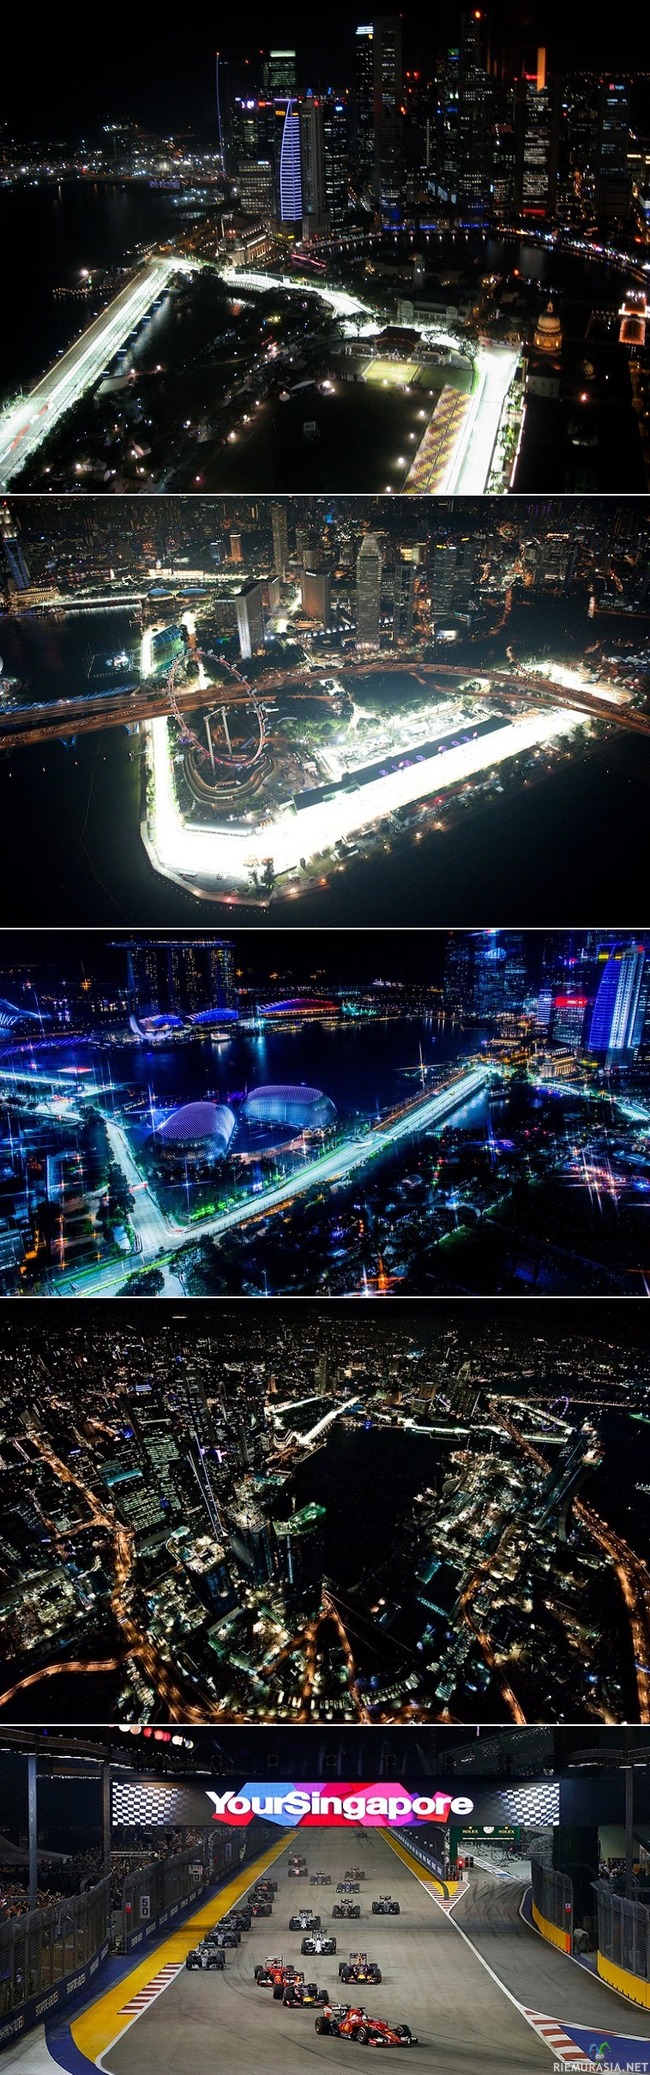 Marina Bay, kaahailua Singaporen yössä, kauniissa maisemissa sitä ajetaan formula1 osakilpailuja - Valokuvia Marina Bayn rata-alueelta Singaporesta.

Singapore on yksi maailman tiheimmin asuttuja kaupunkeja maailmassa. sen pääsaarella asuu yli viisi miljoonaa ihmistä.

Rata on pituudeltaan 5,065 kilometriä ja sen on suunnitellut saksalainen arkkitehti Hermann Tilke. Vuodesta 2008 alkaen radalla on ajettu Singaporen Grand Prix.

Marina Bay Street Circuitilla vuonna 2008 ajettu Singaporen Grand Prix oli historian ensimmäinen F1 -iltakilpailu. Iltakilpailu oli ollut jo jonkin aikaa Formula 1 -sarjan kaupalliset oikeudet omistavan Bernie Ecclestonen unelmana. Myös Singaporen GP:n aika-ajo ajetaan pimeällä keinovalaistuksessa Katsomoihin mahtuu yli 80 000 ihmistä seuraamaan kilpailua. 